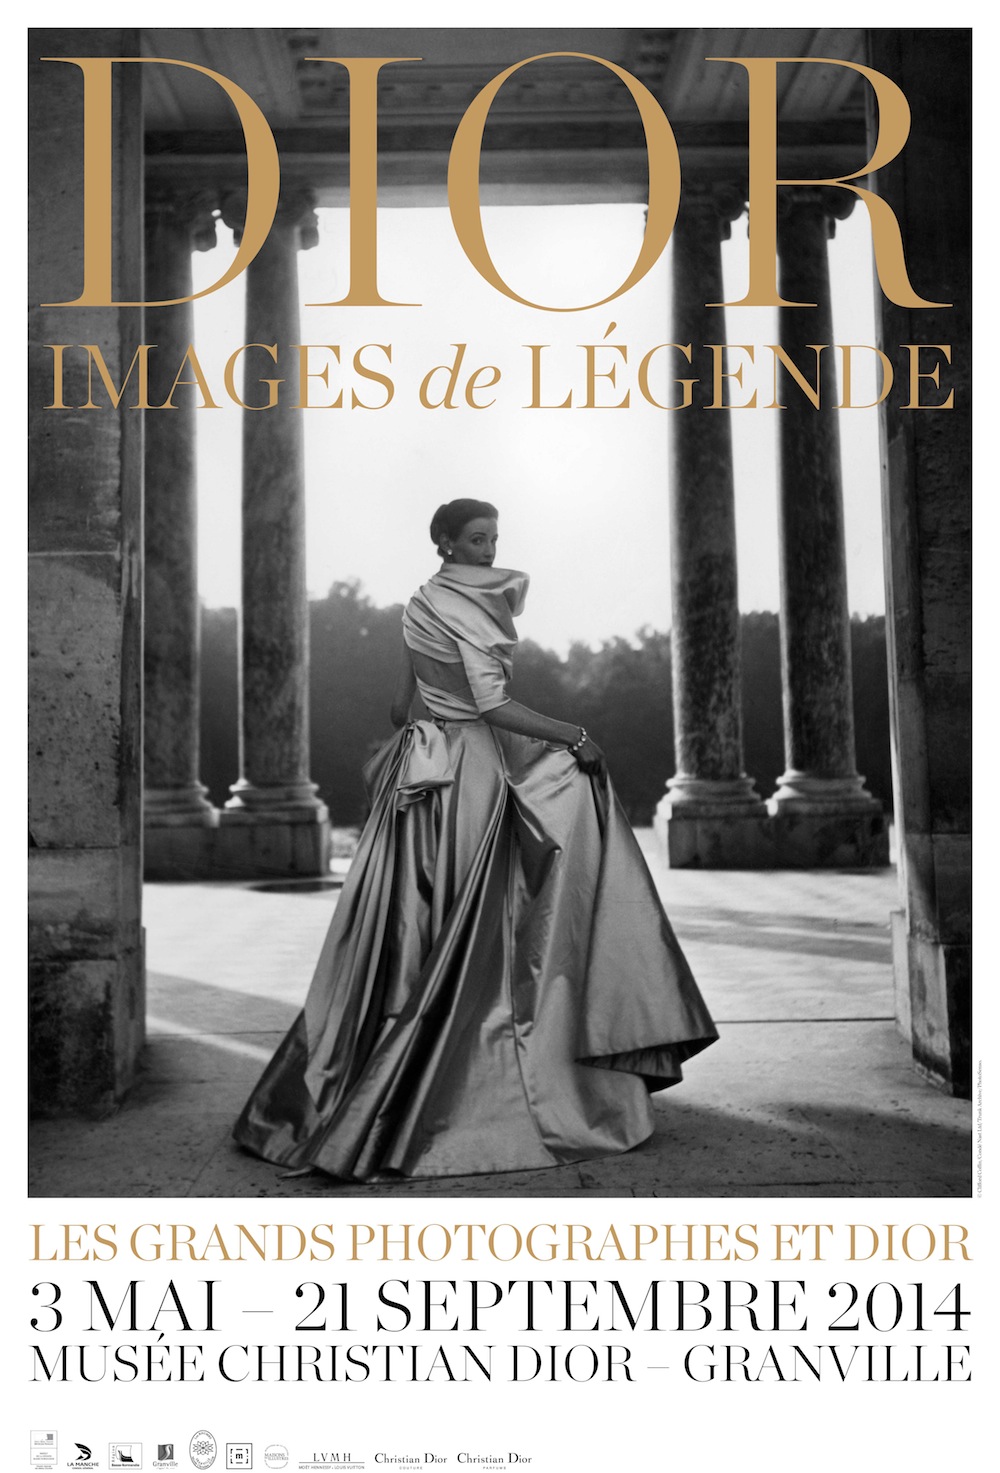 “Dior, images de légende”, una exposición sobre el legado de Christian Dior